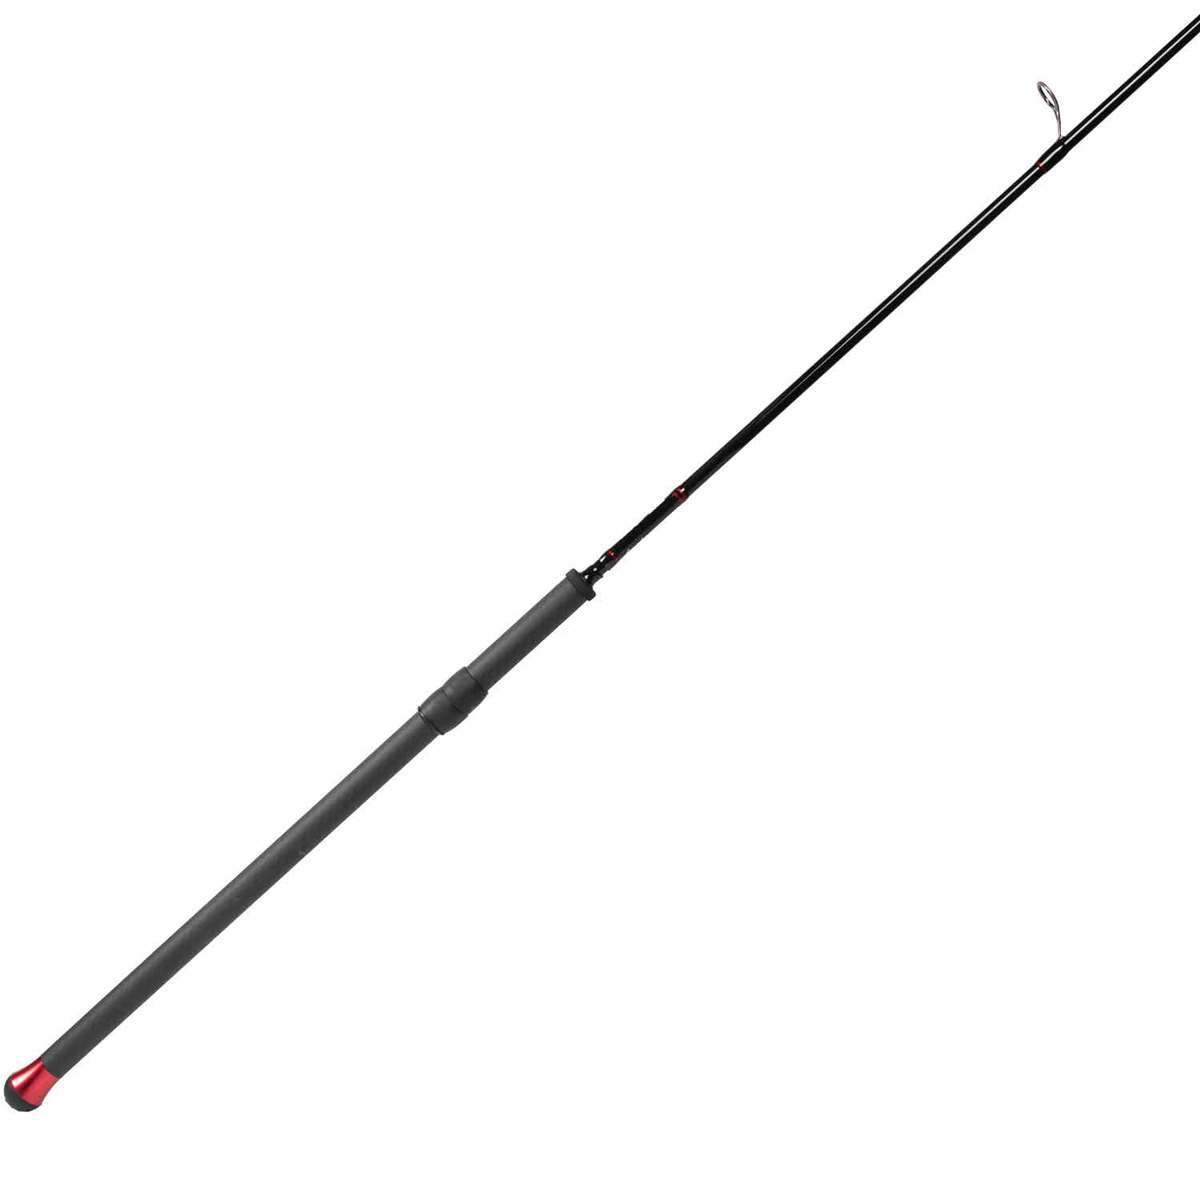 Redline CenterSpin Float Rod by Lamiglas (11'3, 12' & 13')